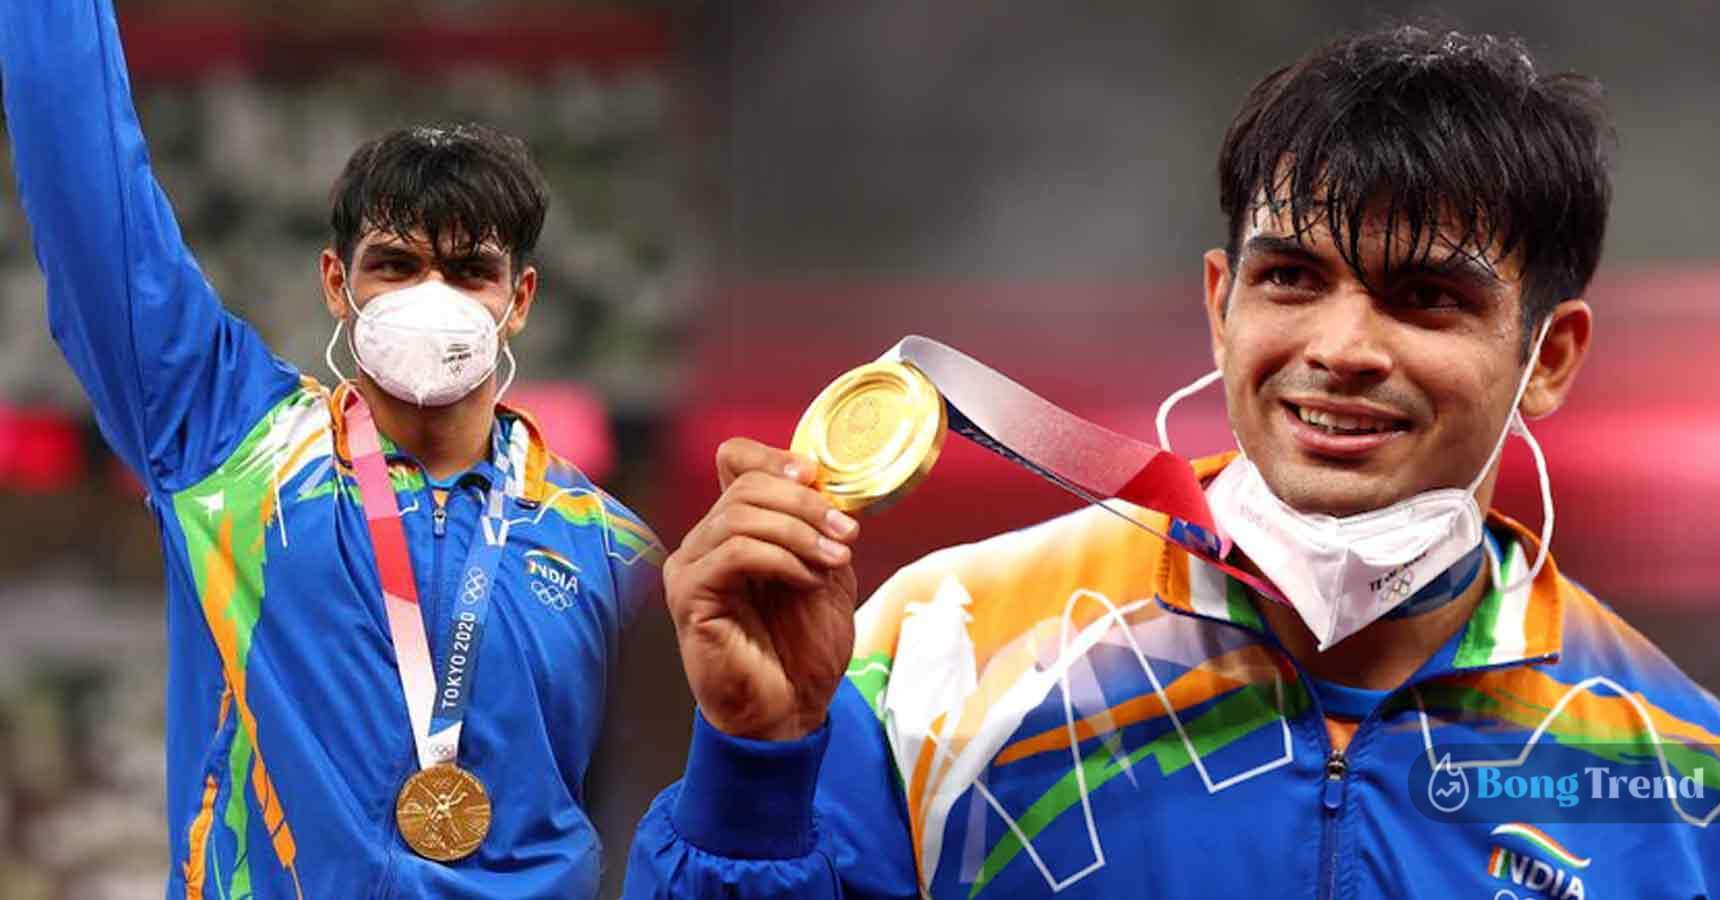 নীরজ চোপড়া Neeraj Chopra Indian Athlete Olympic Gold medal Biopic